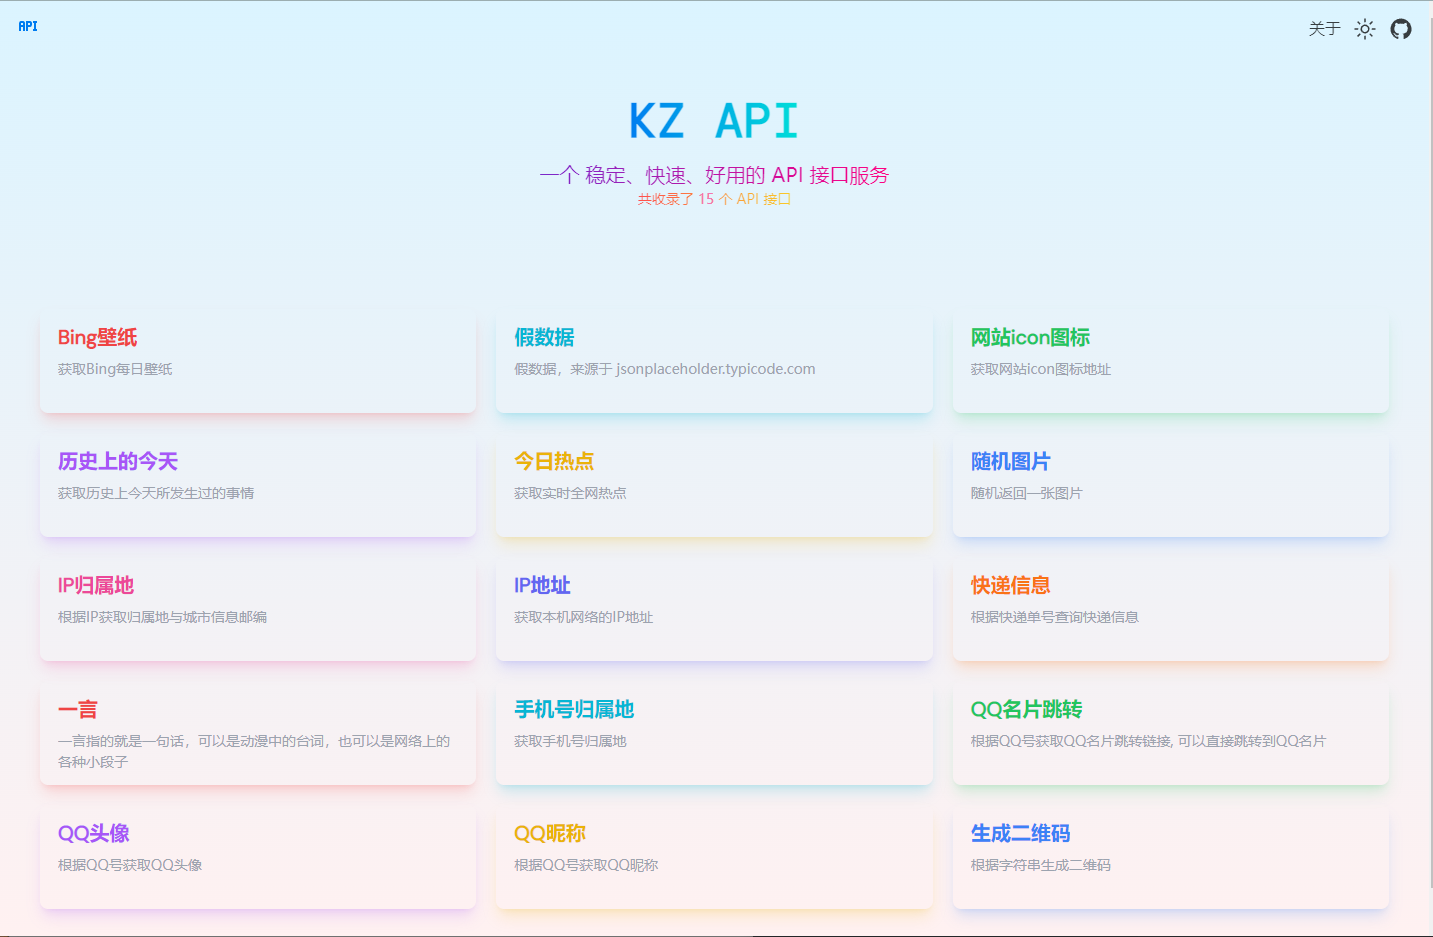 KZ API